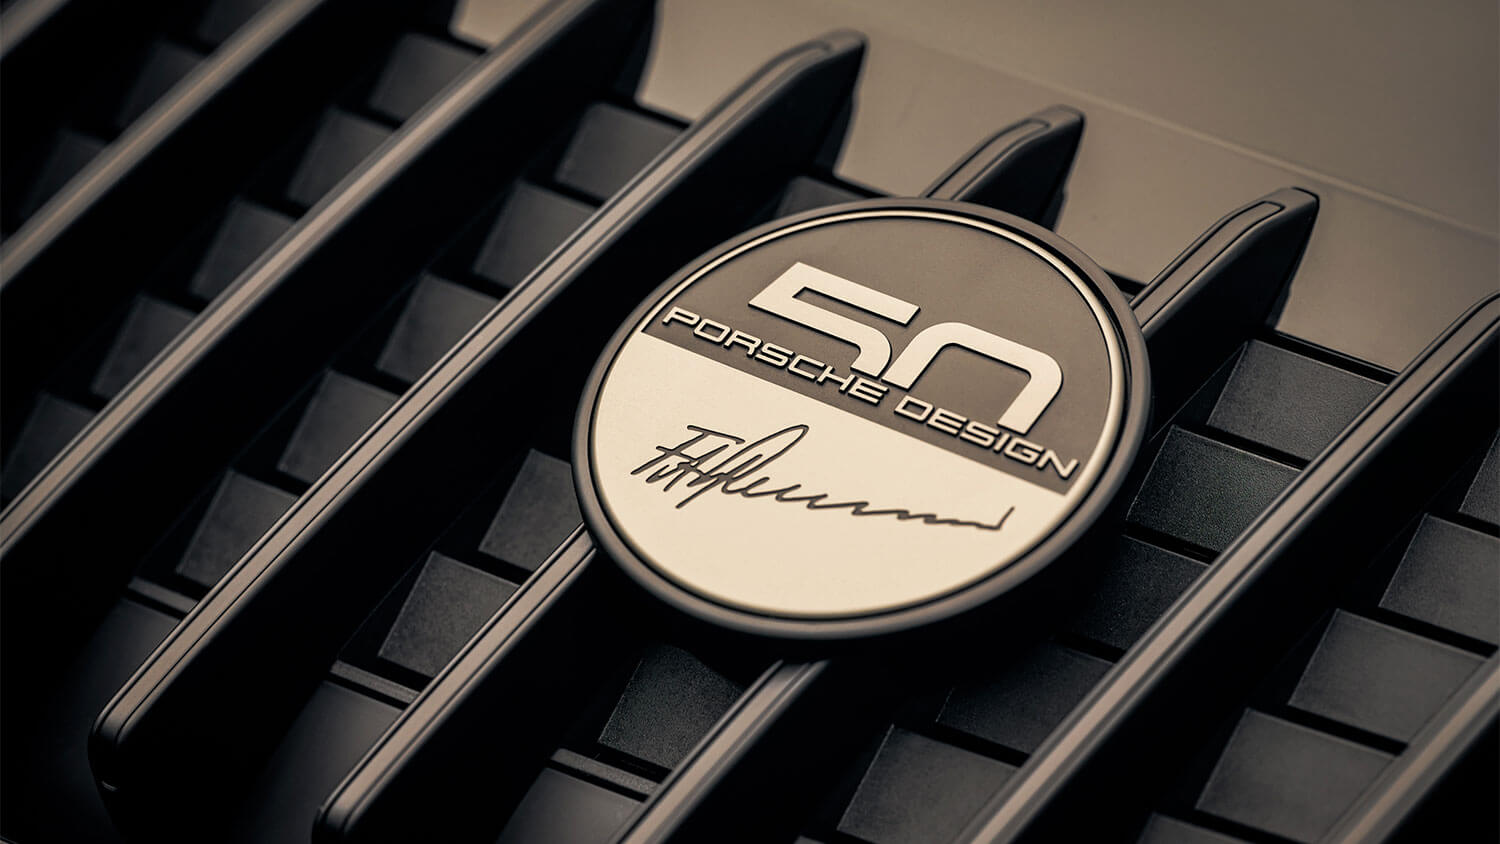 Porsche Design viert 50 jaar met exclusieve 911 edities